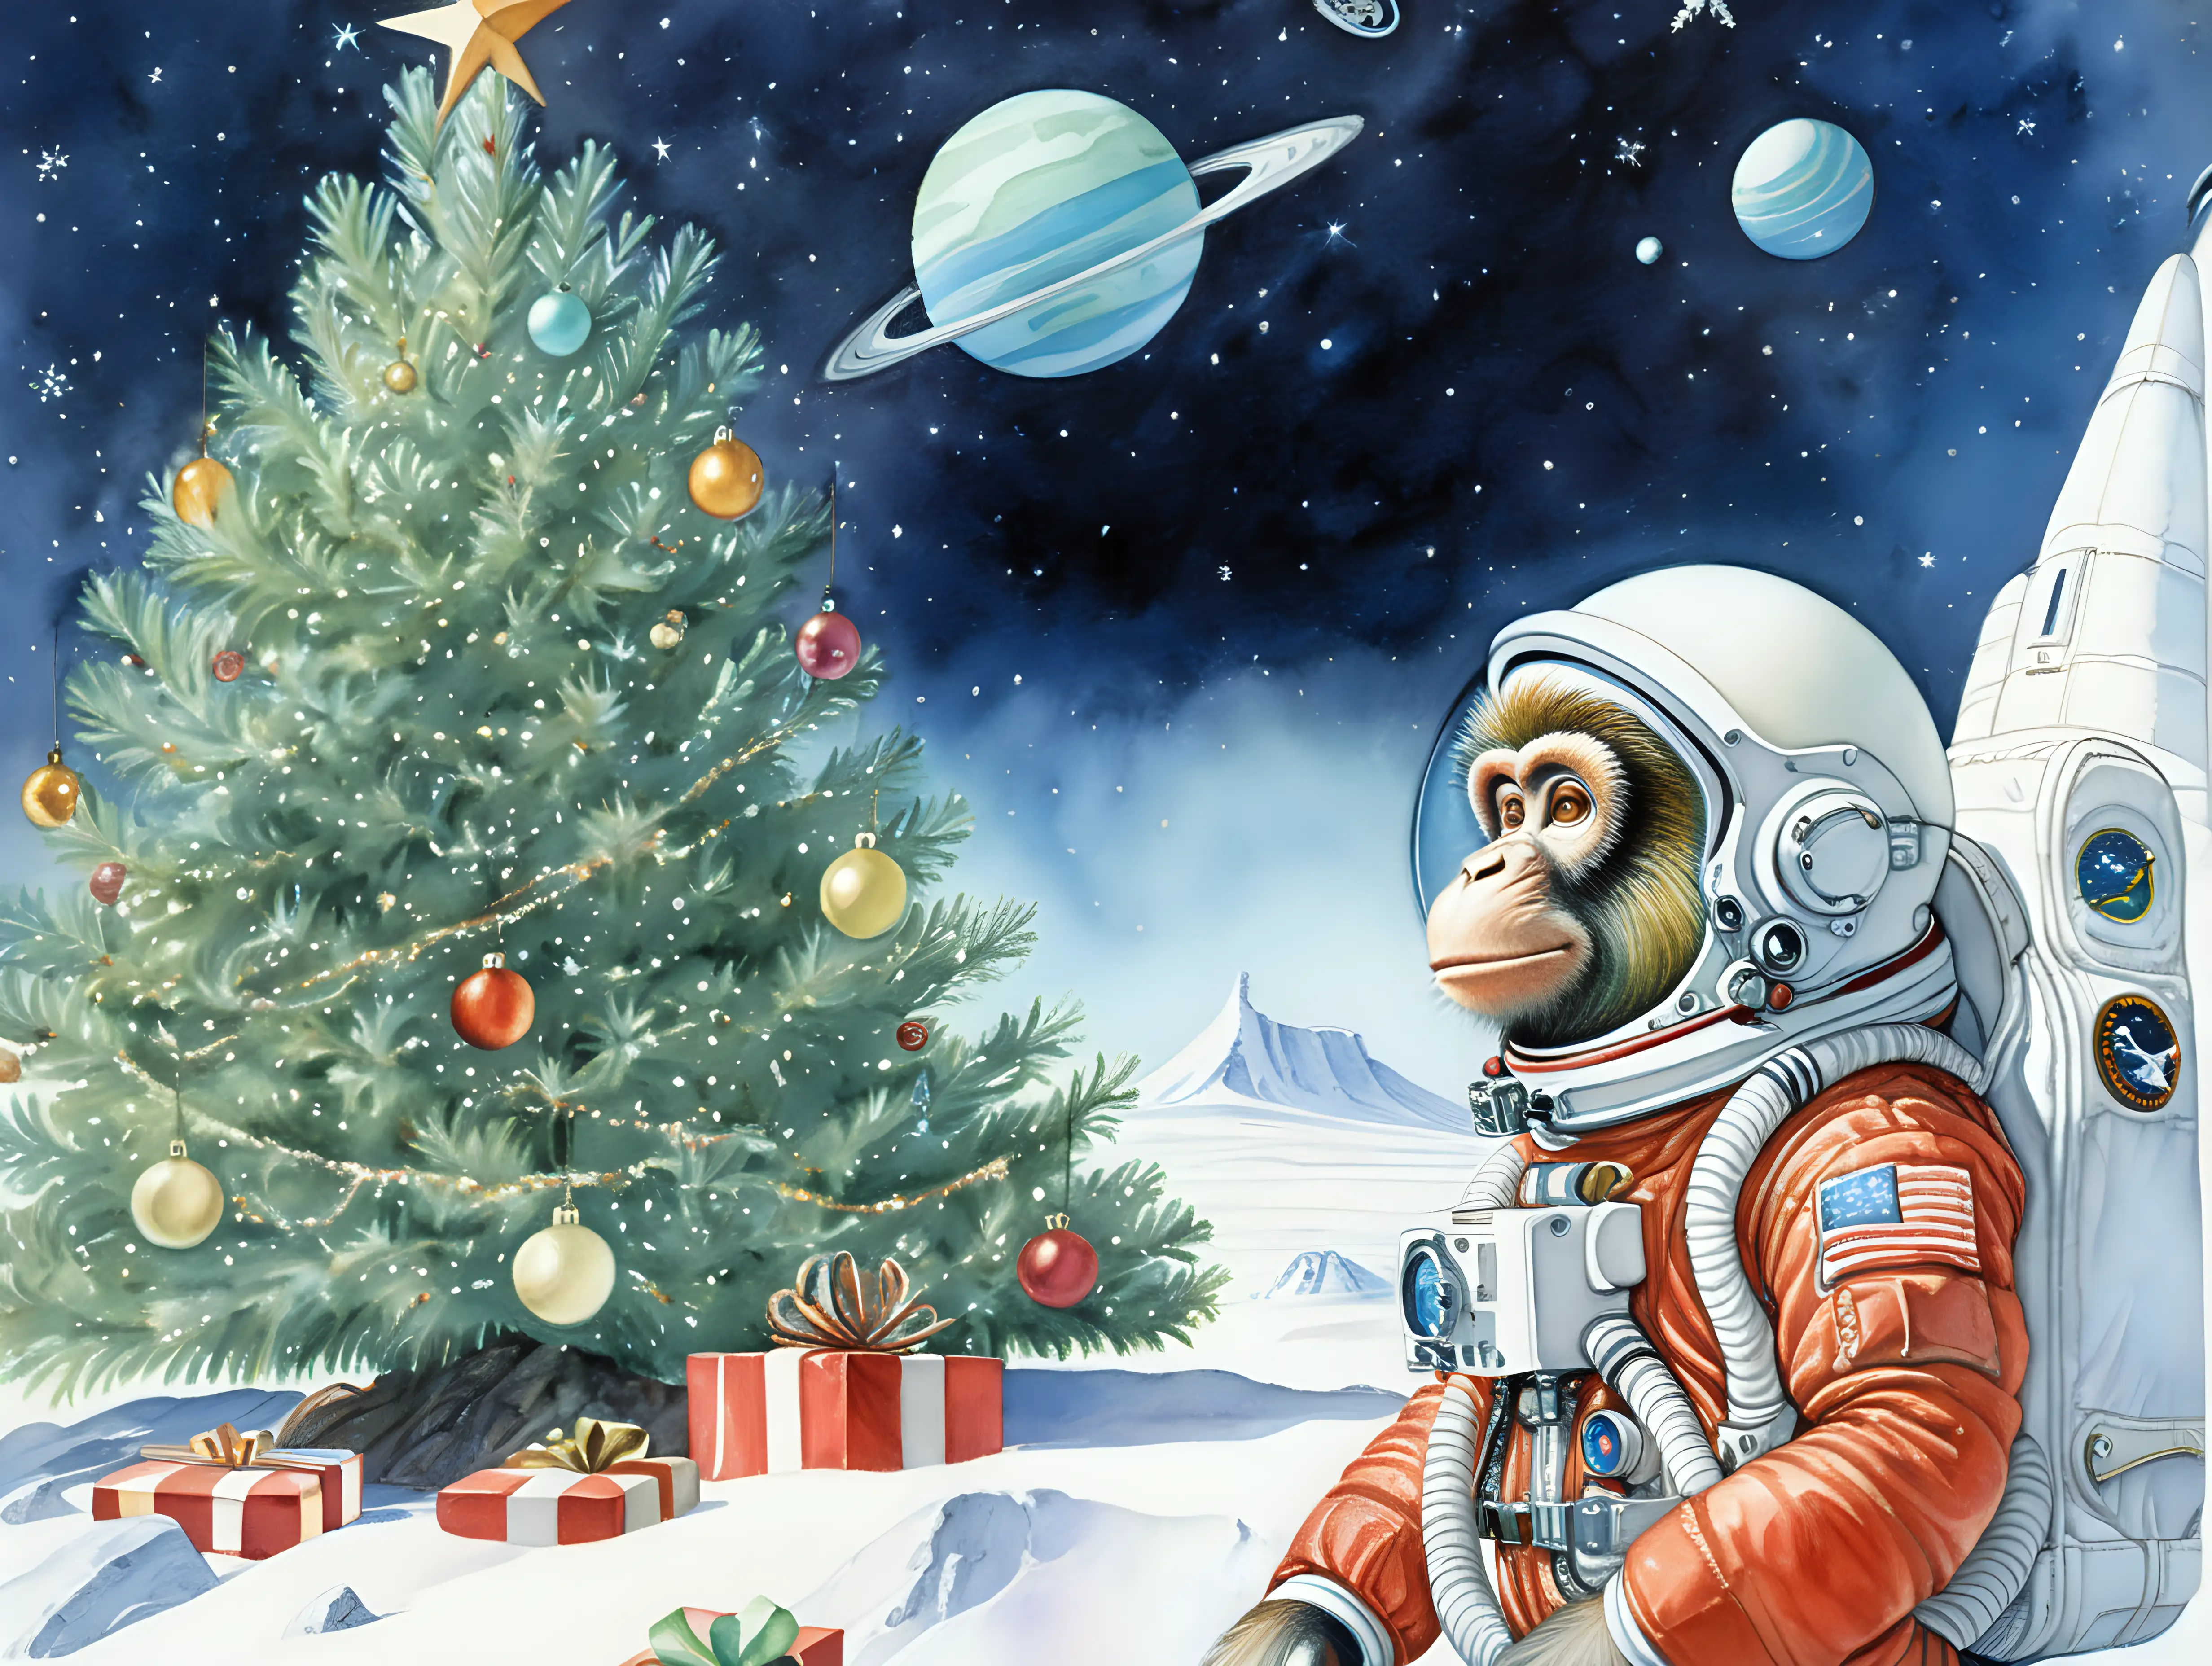 Ambiente espacial,mono astronauta,arbol de navidad, estilo Moebius, acuarela